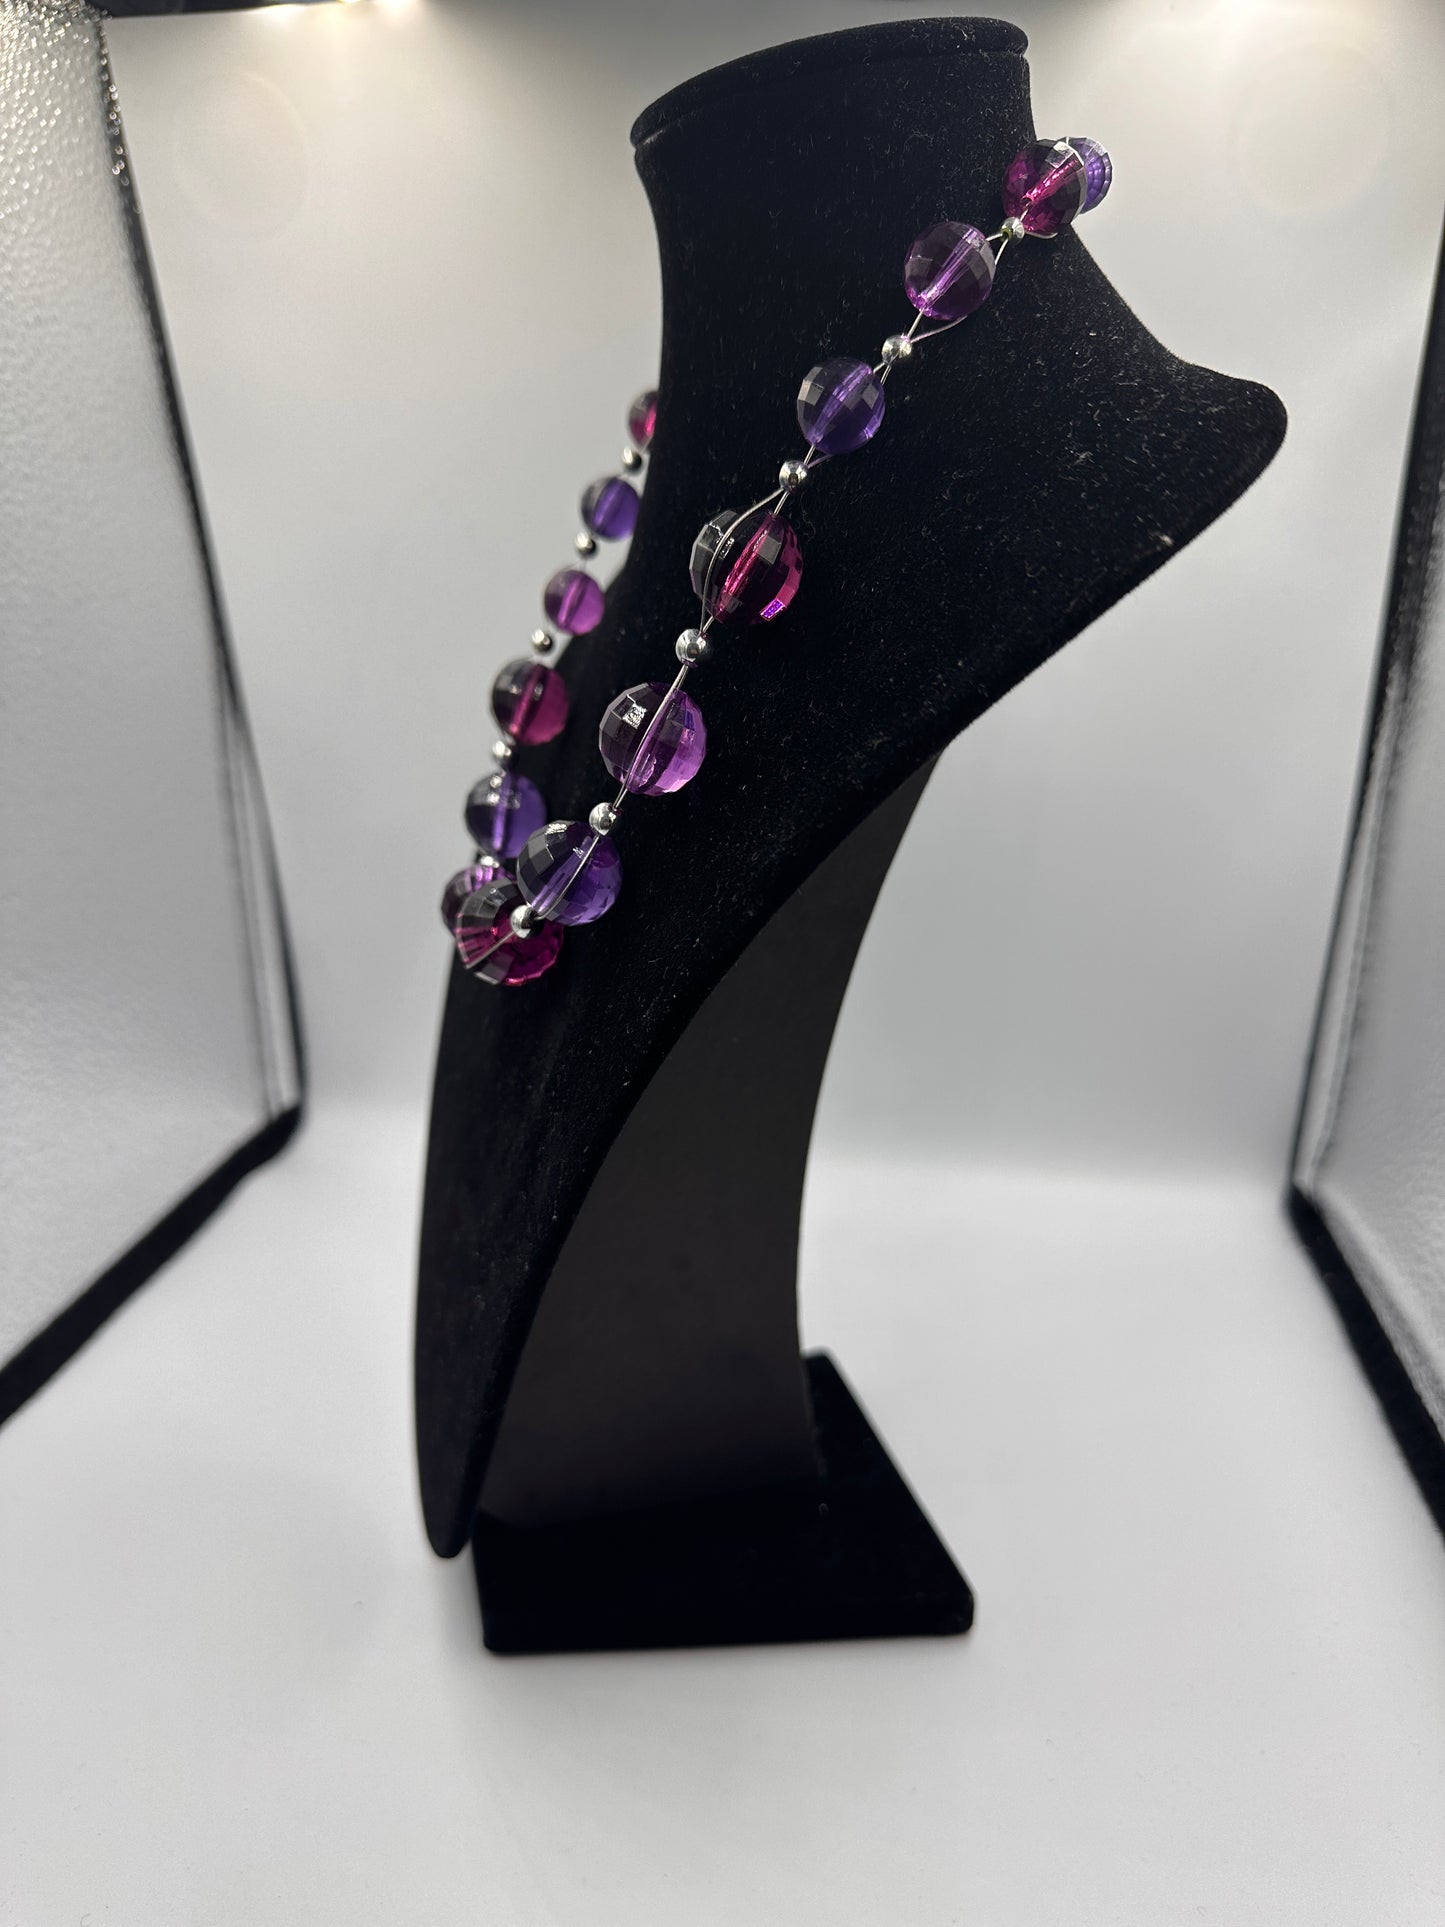 Perlenkette in Violett mit Silbernen Akzenten